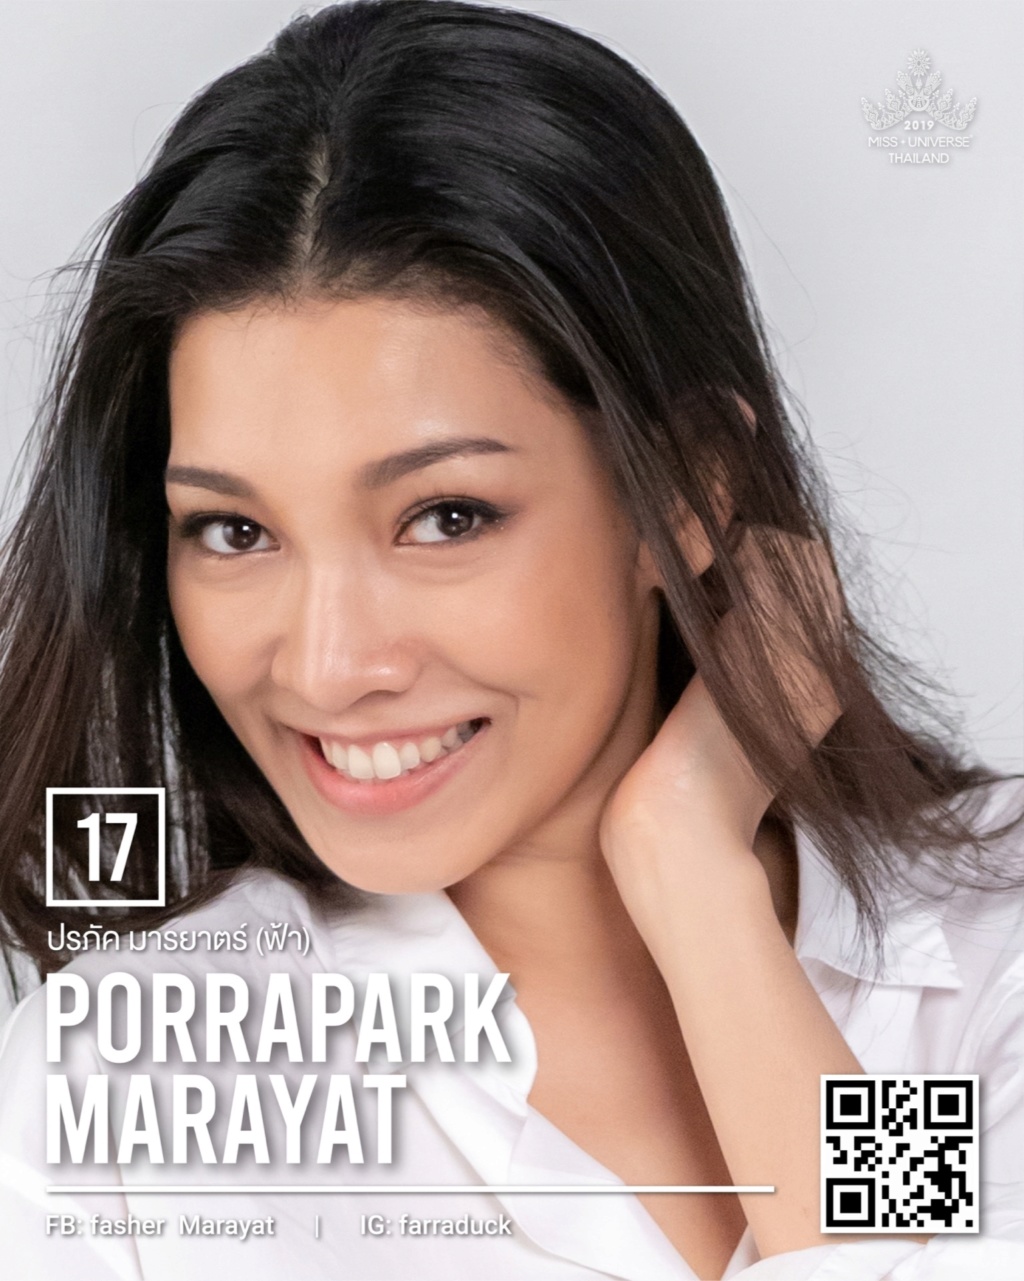 Miss Universe THAILAND 2019 - PORTRAITS!  11207